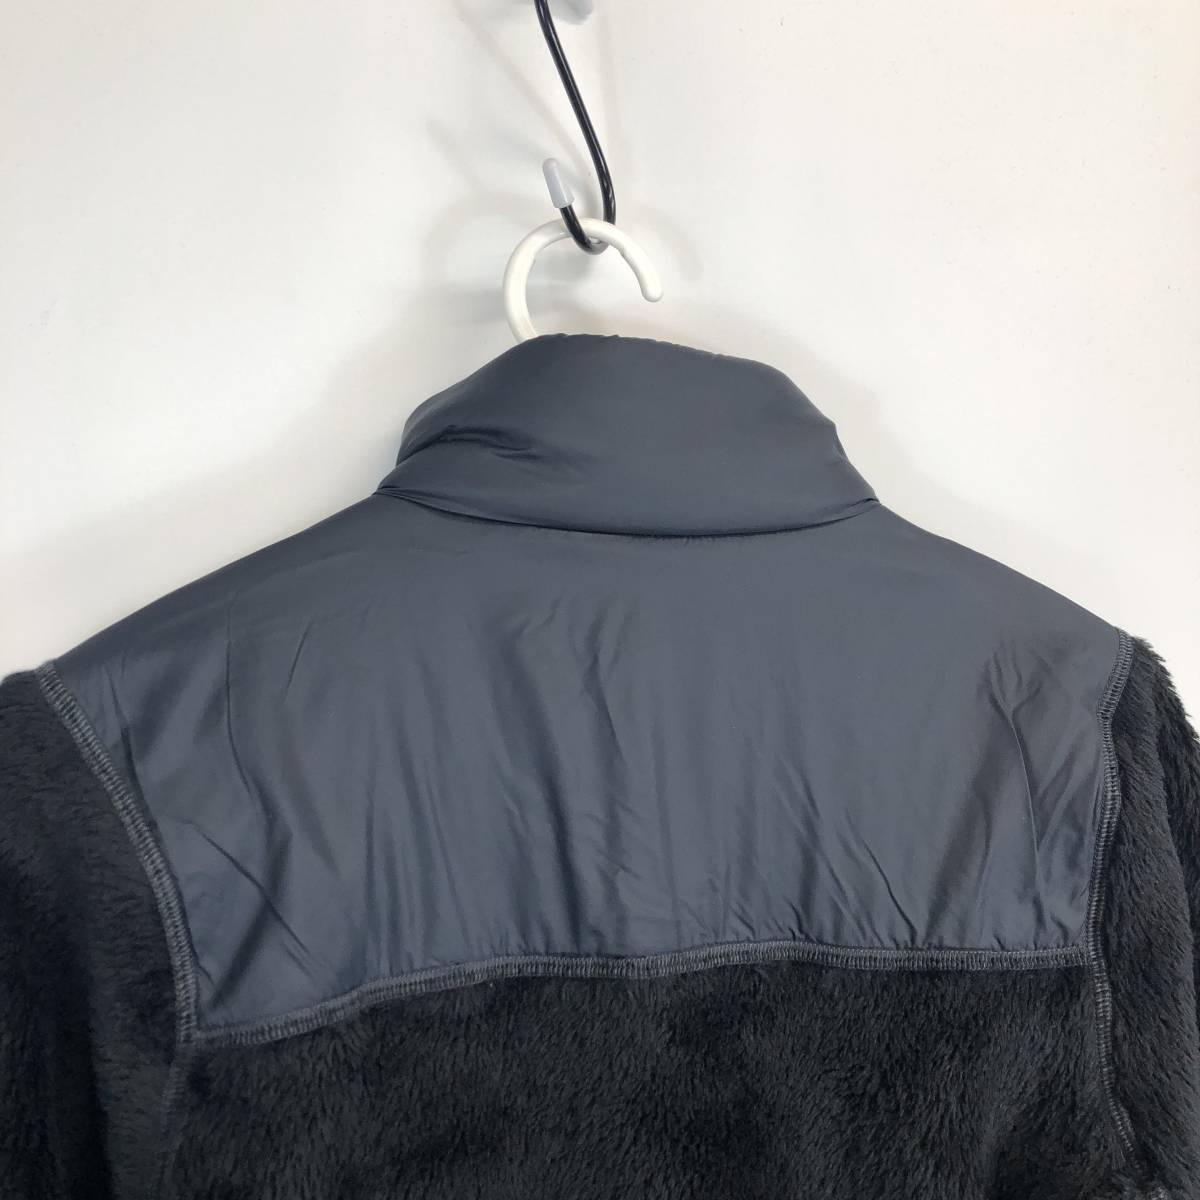 Lowe alpine low Alpine fleece jacket black lady's S size LFW13207 Pola Tec Polartec